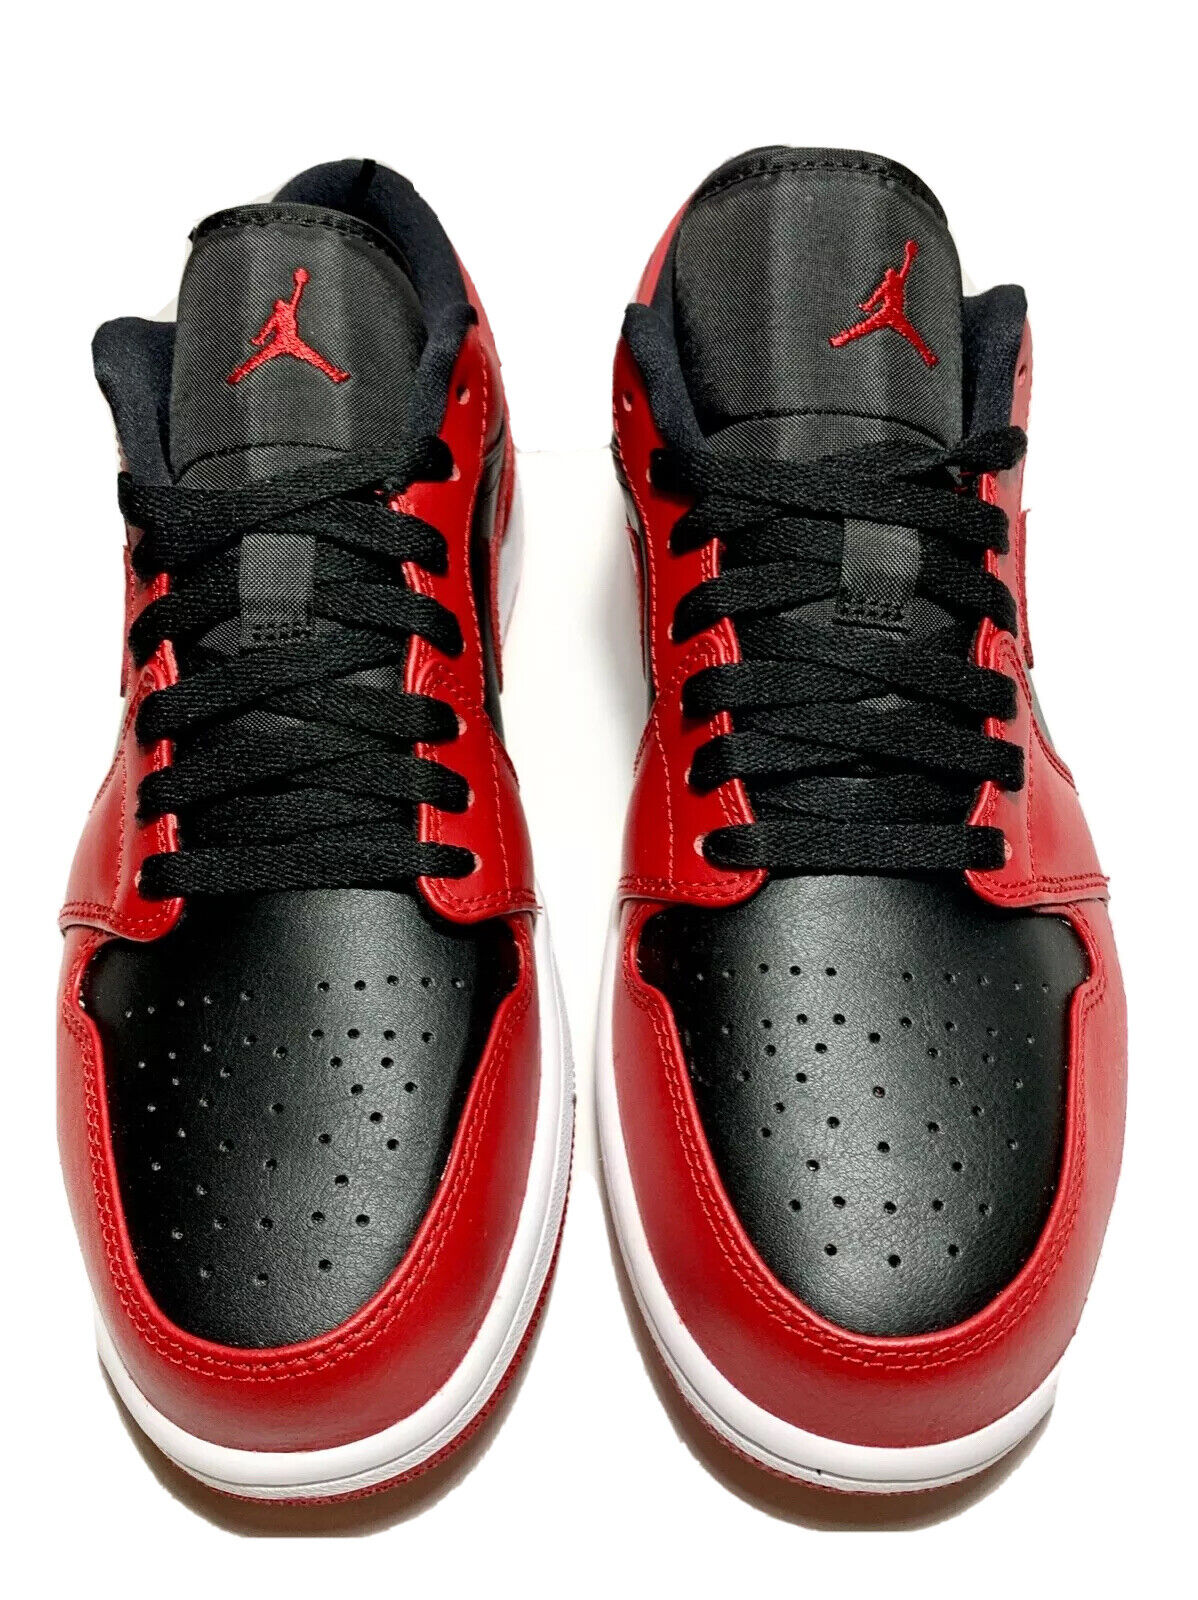 Nike Air Jordan 1 Retro Low Reverse Bred Men US 10 Black Red Leather ...